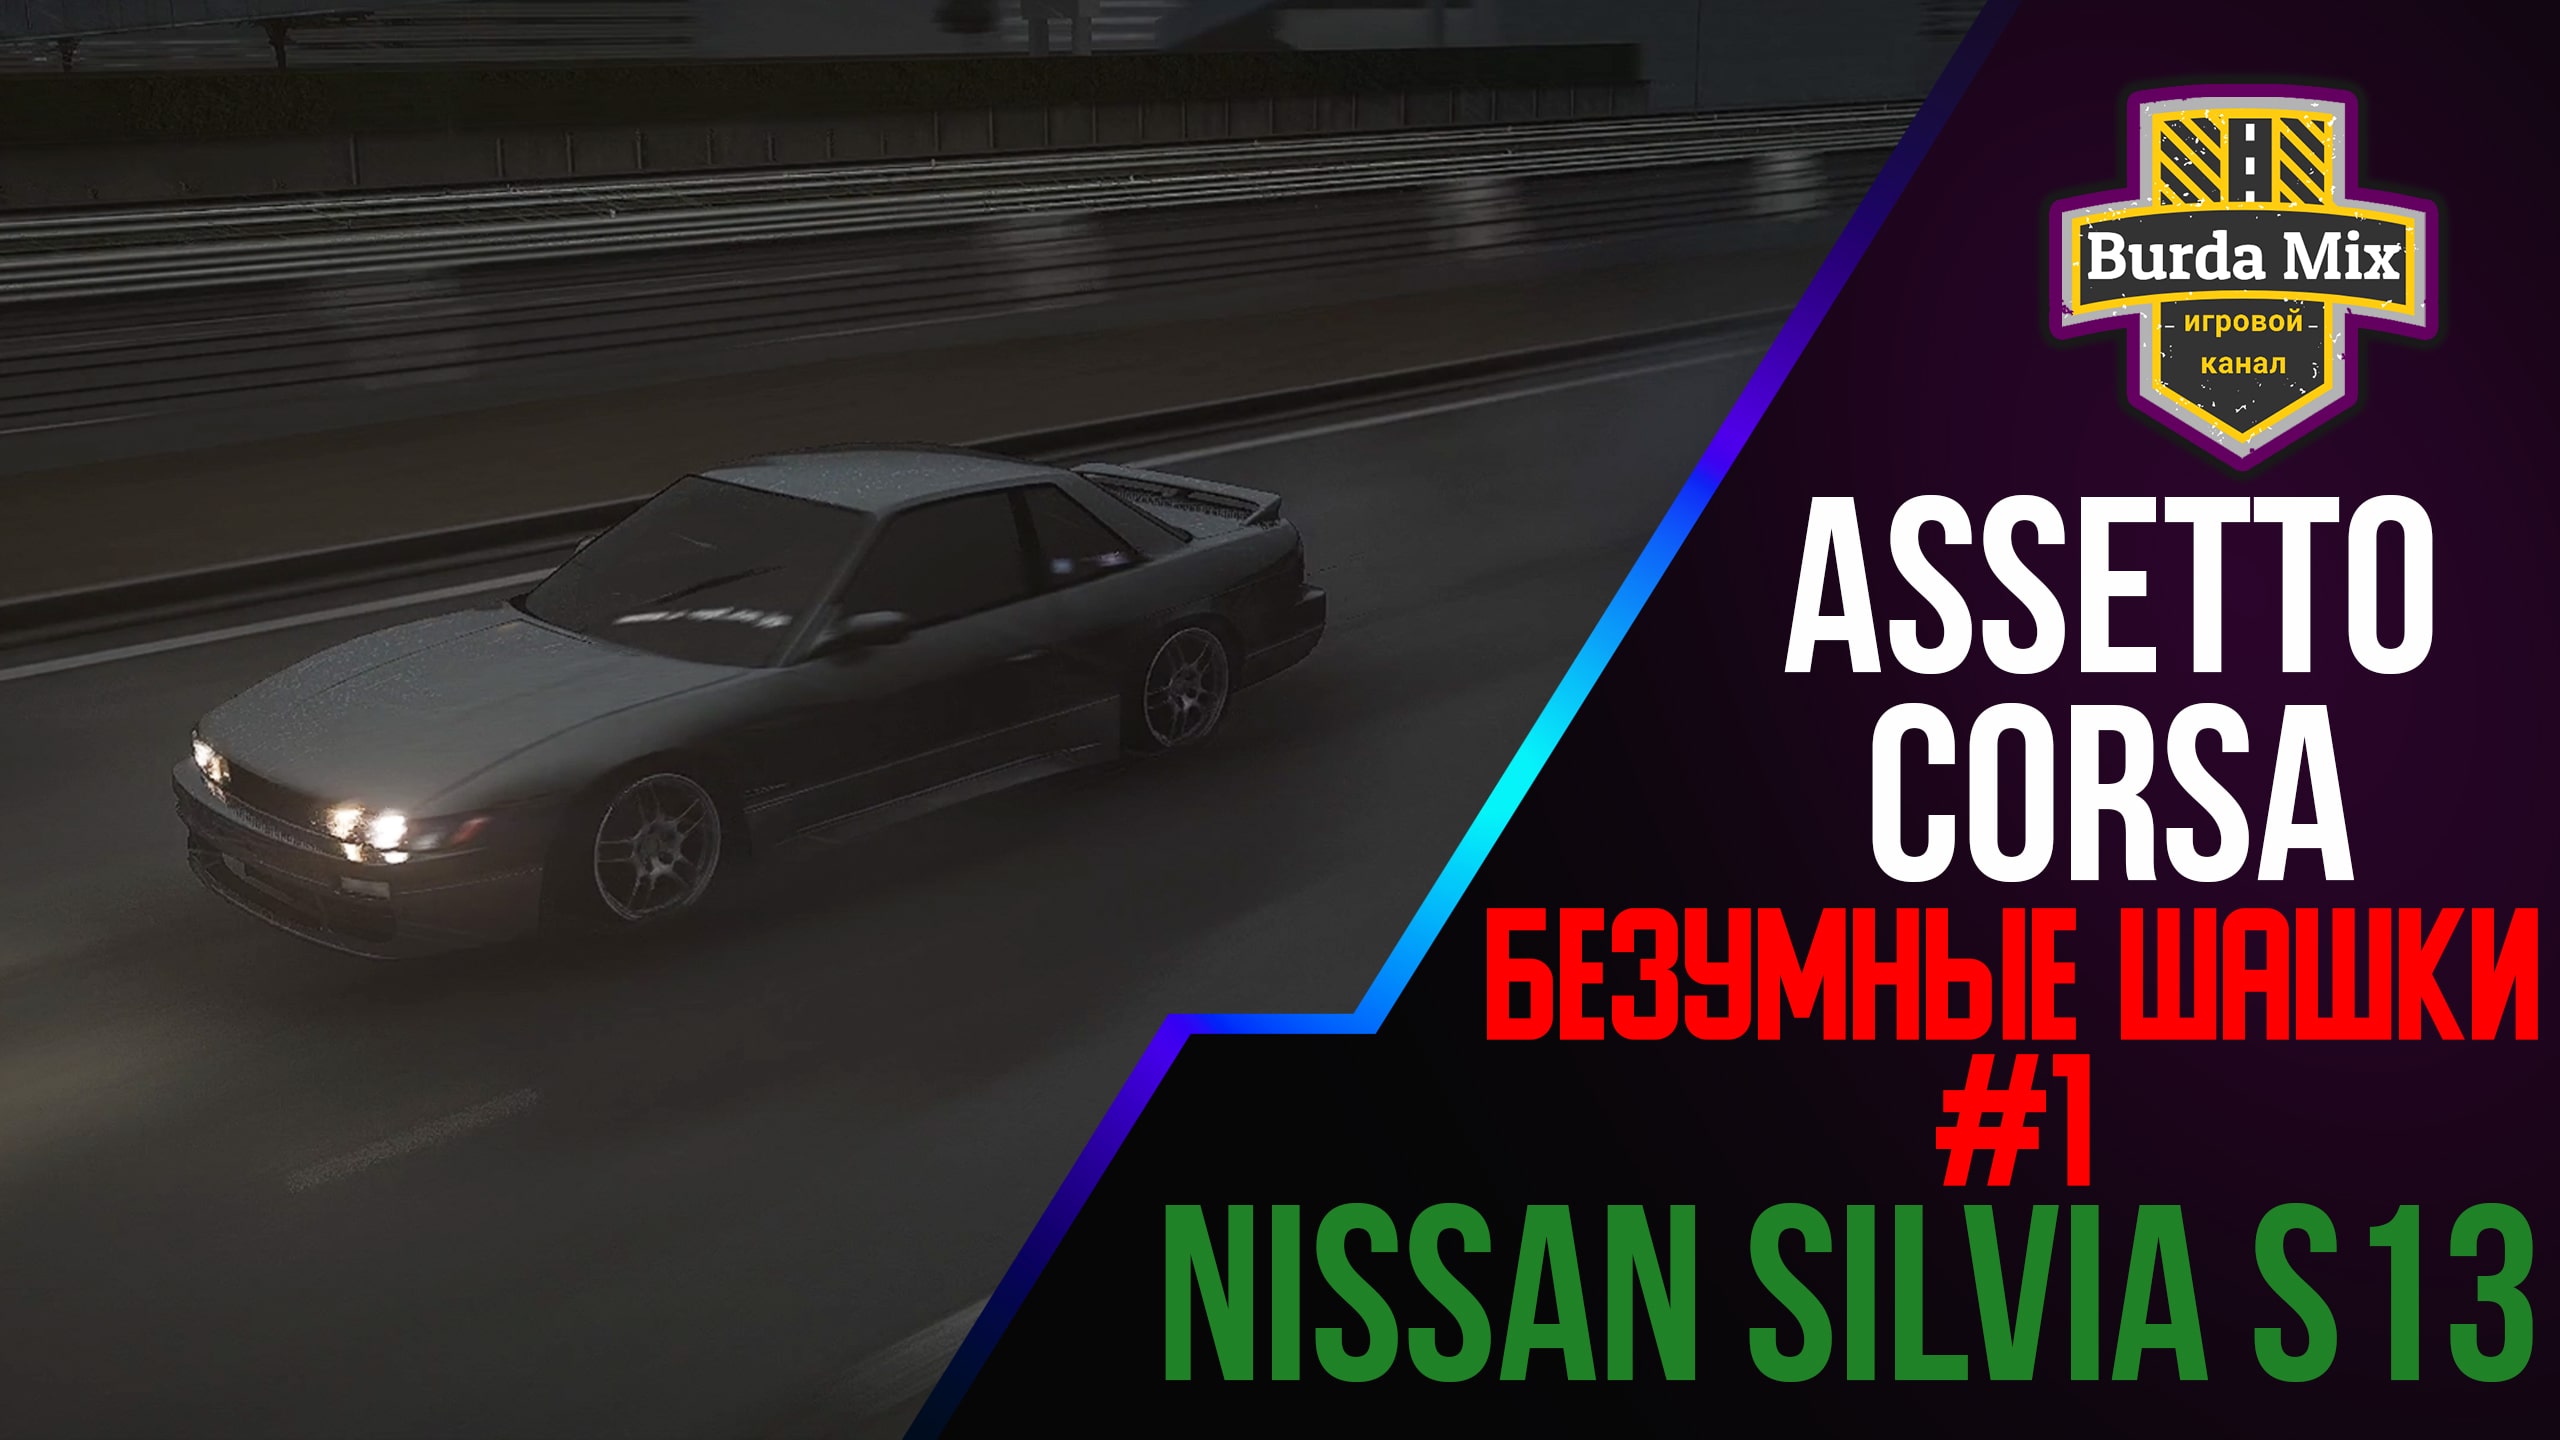 Шашки на Nissan Silvia S13 в дождь с трафиком в  Assetto corsa